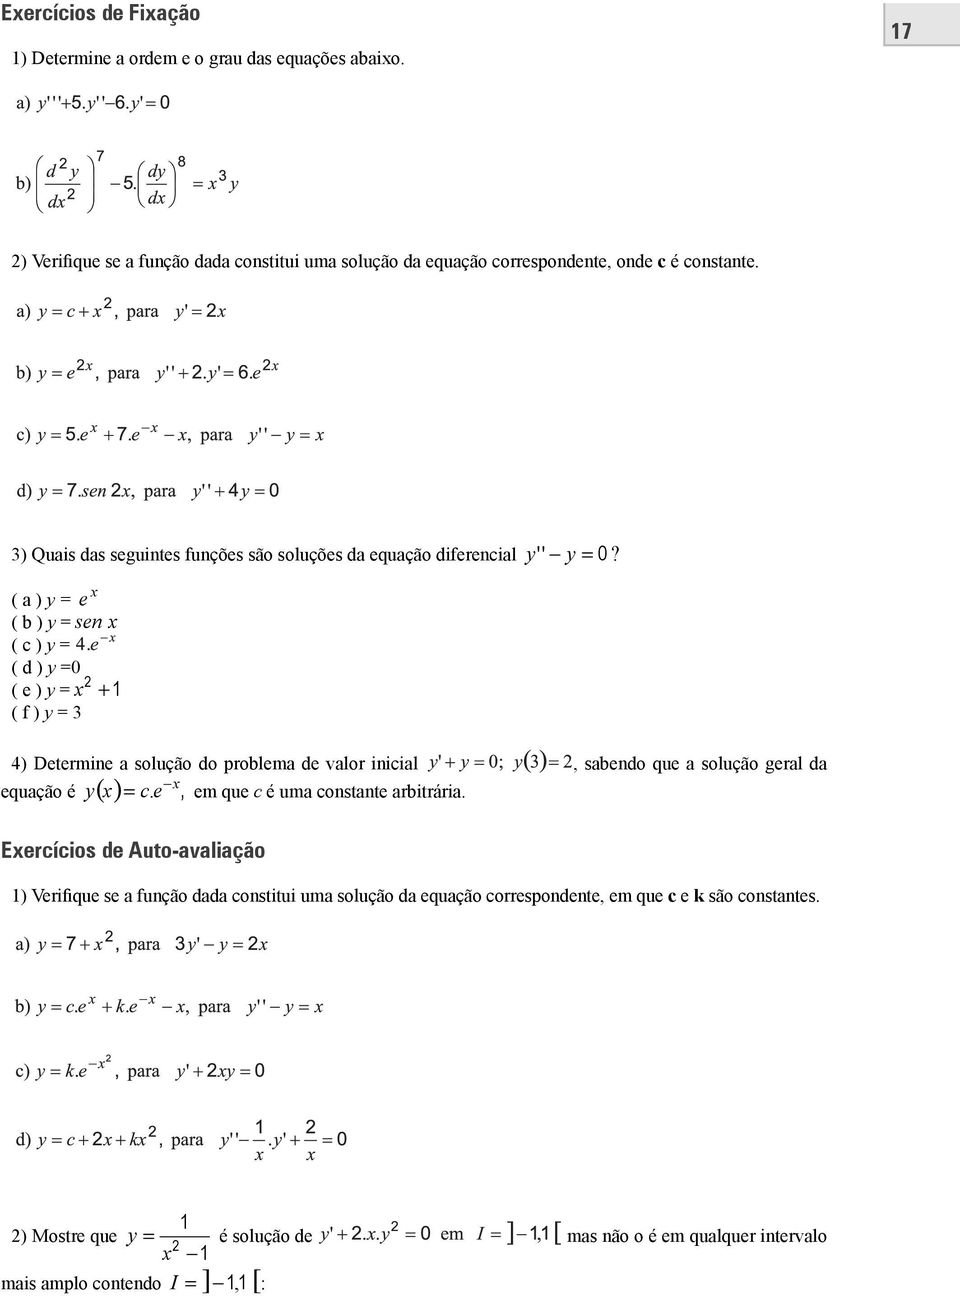 ( a ) y = e ( b ) y = sen ( c ) y = ( d ) y =0 ( e ) y = + 1 ( f ) y = 3 4) Determine a solução do problema de valor inicial, sabendo que a solução geral da y = c.